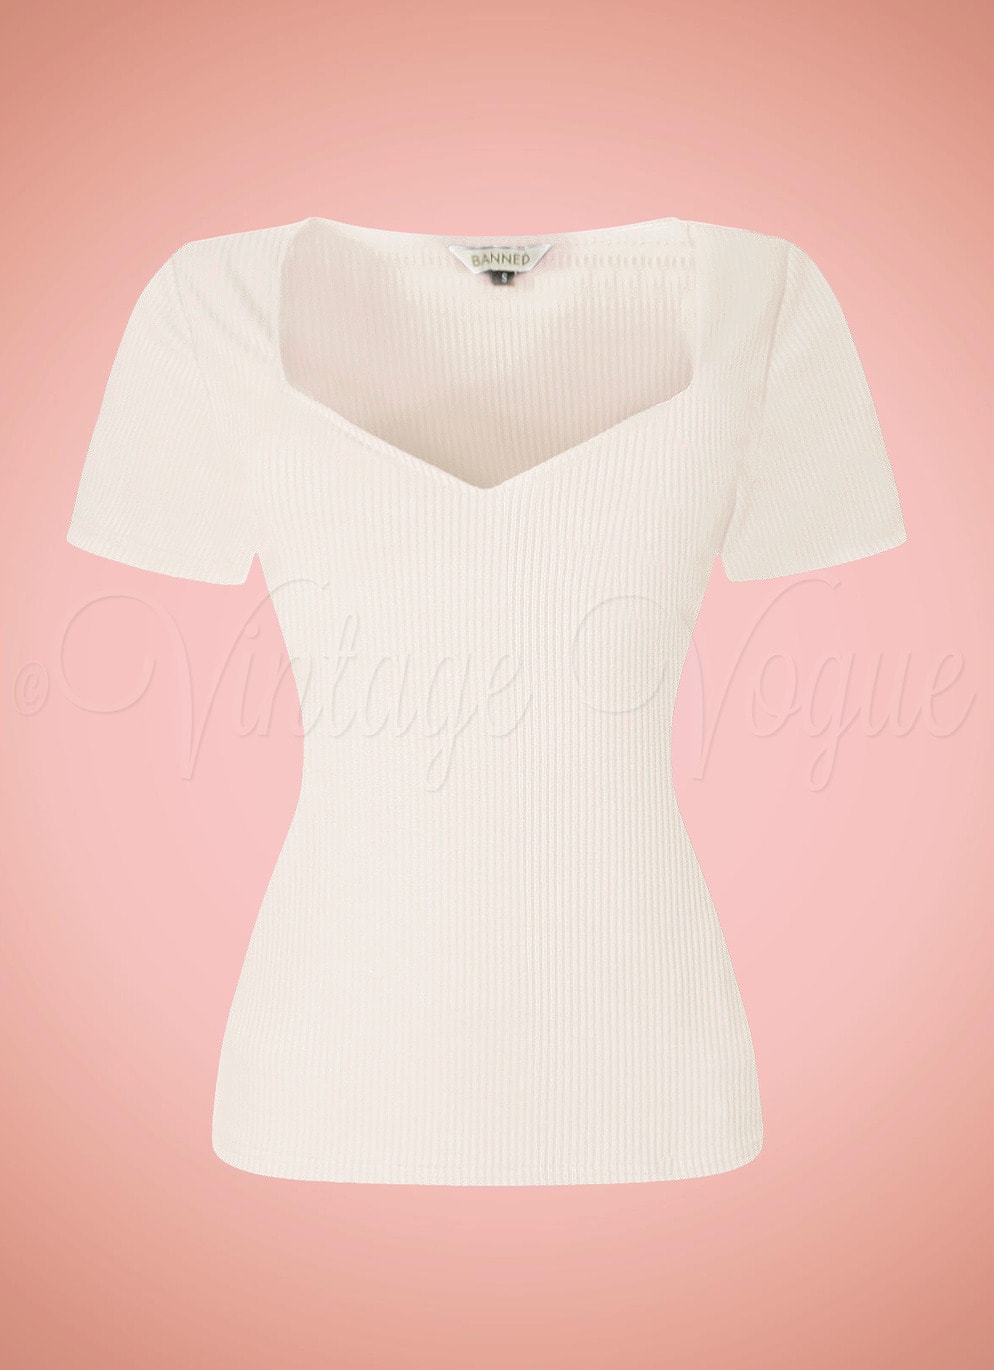 Banned Retro Vintage Geripptes Basic Shirt Fara Top in Creme Weiß Elfenbein TP10607